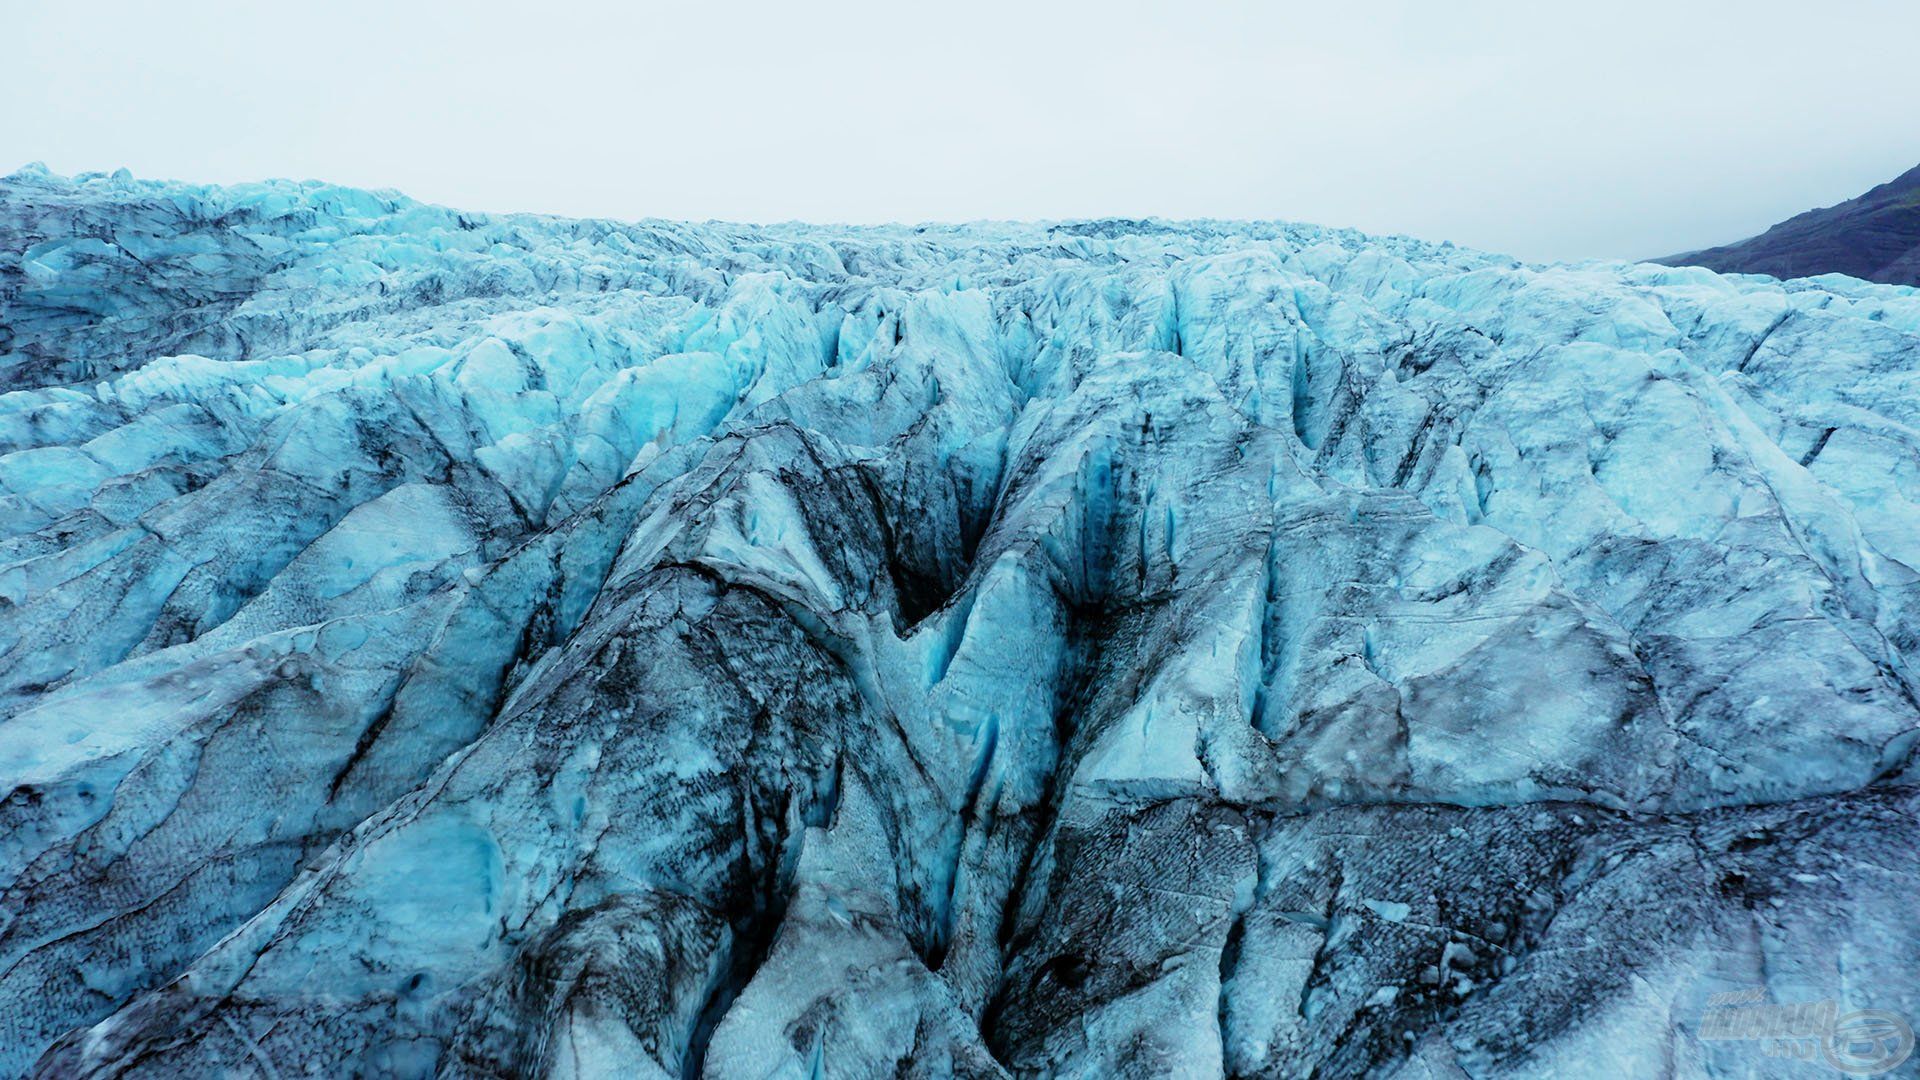 Izland, ahol egyszerre jelen van a 4 évszak, még a legmelegebb évszakban is. Itt hétköznapi nyáron is a jeges, havas hegyoldal és a gleccserek